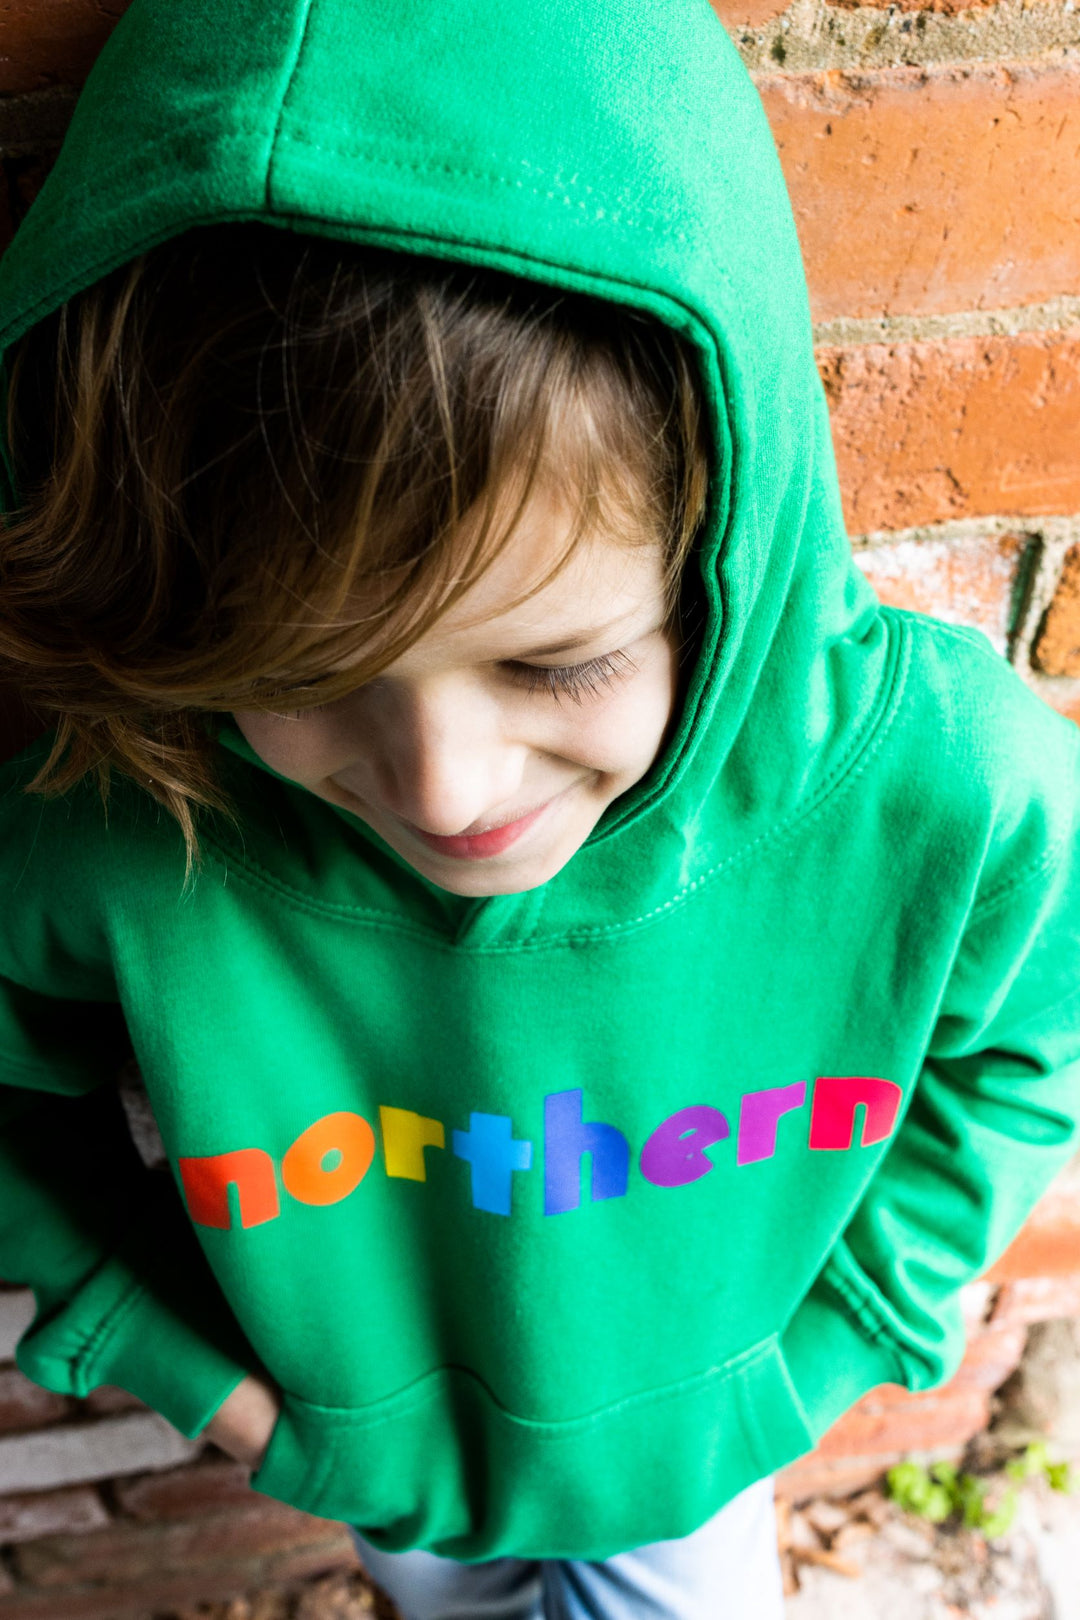 KIDS - Rainbow Northern (Hoodie or Sweater)